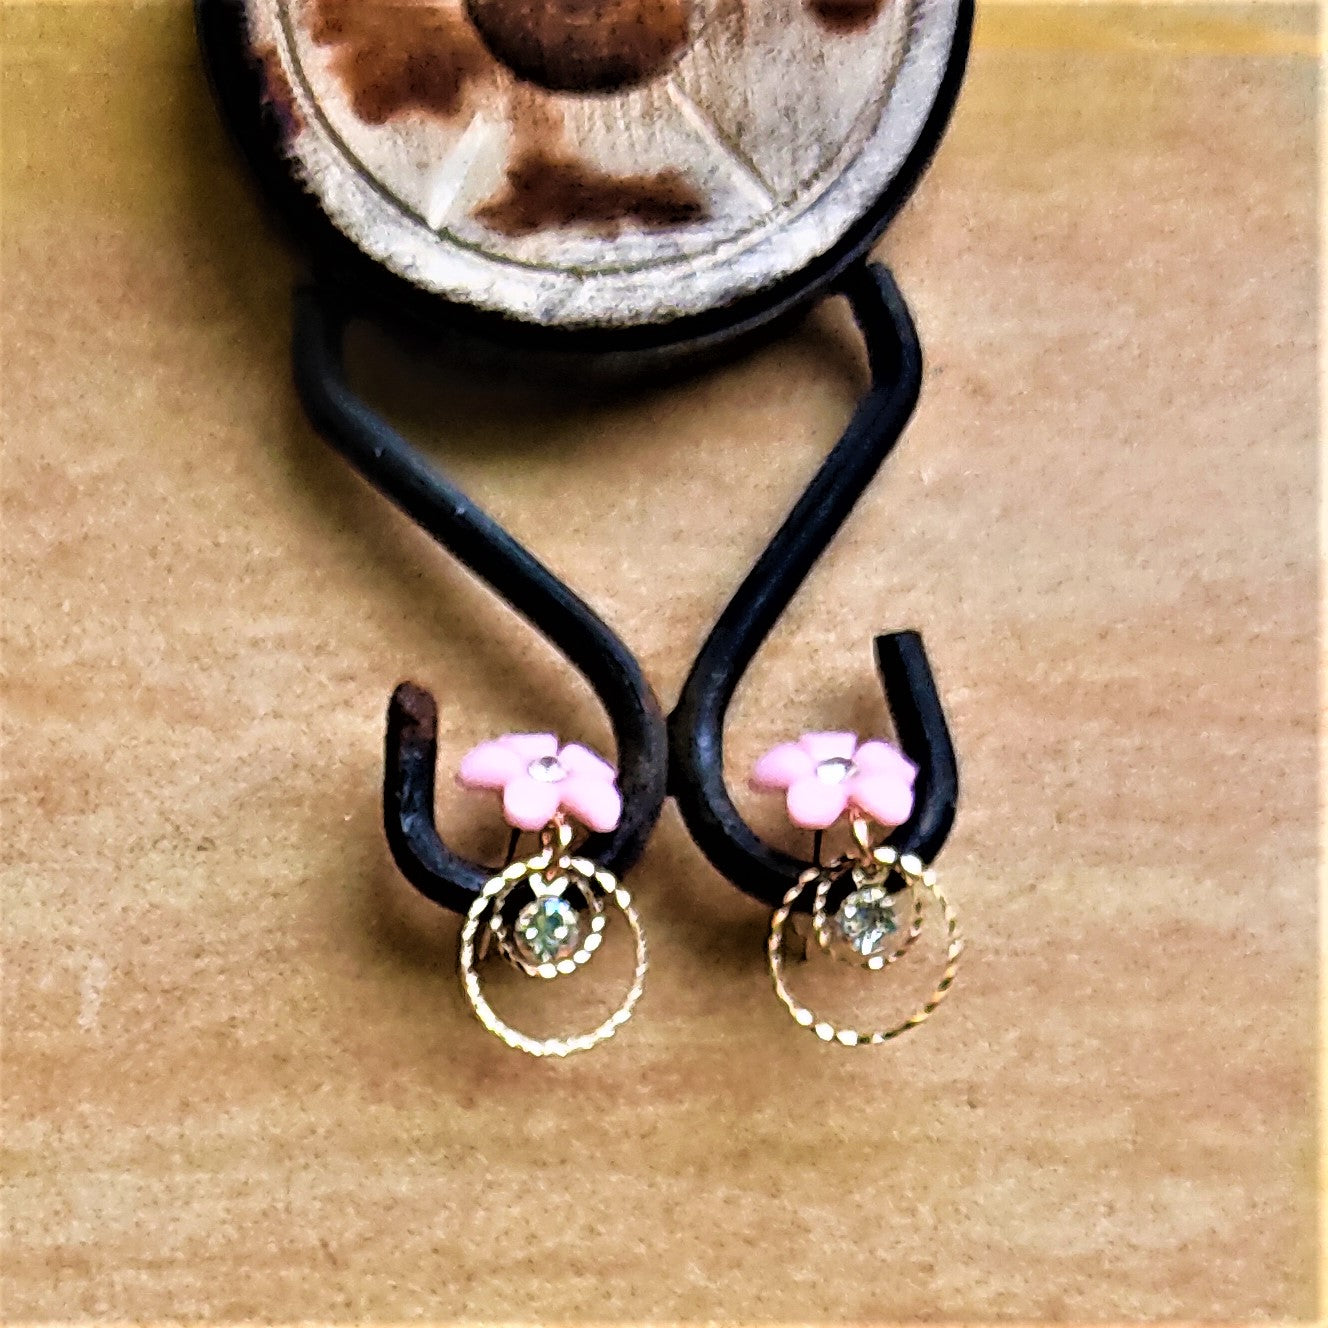 Small Flower Earrings Pink Jewelry Ear Rings Earrings Trincket